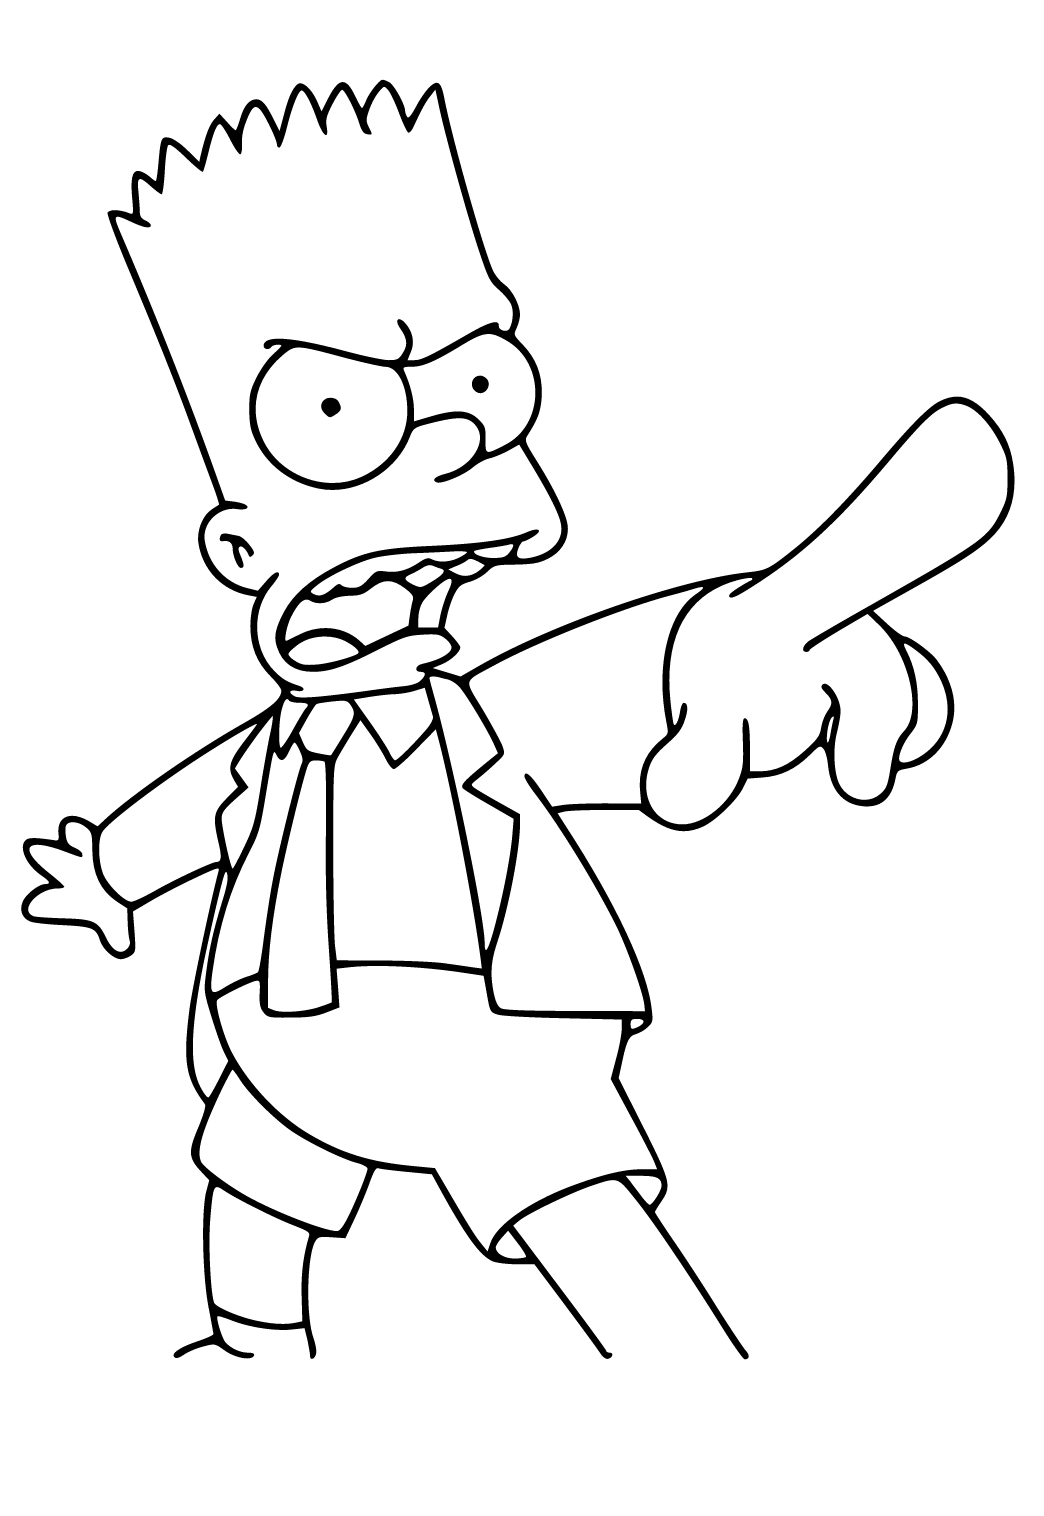 Como desenhar o Bart Simpsons de maneira bem simples e fácil 